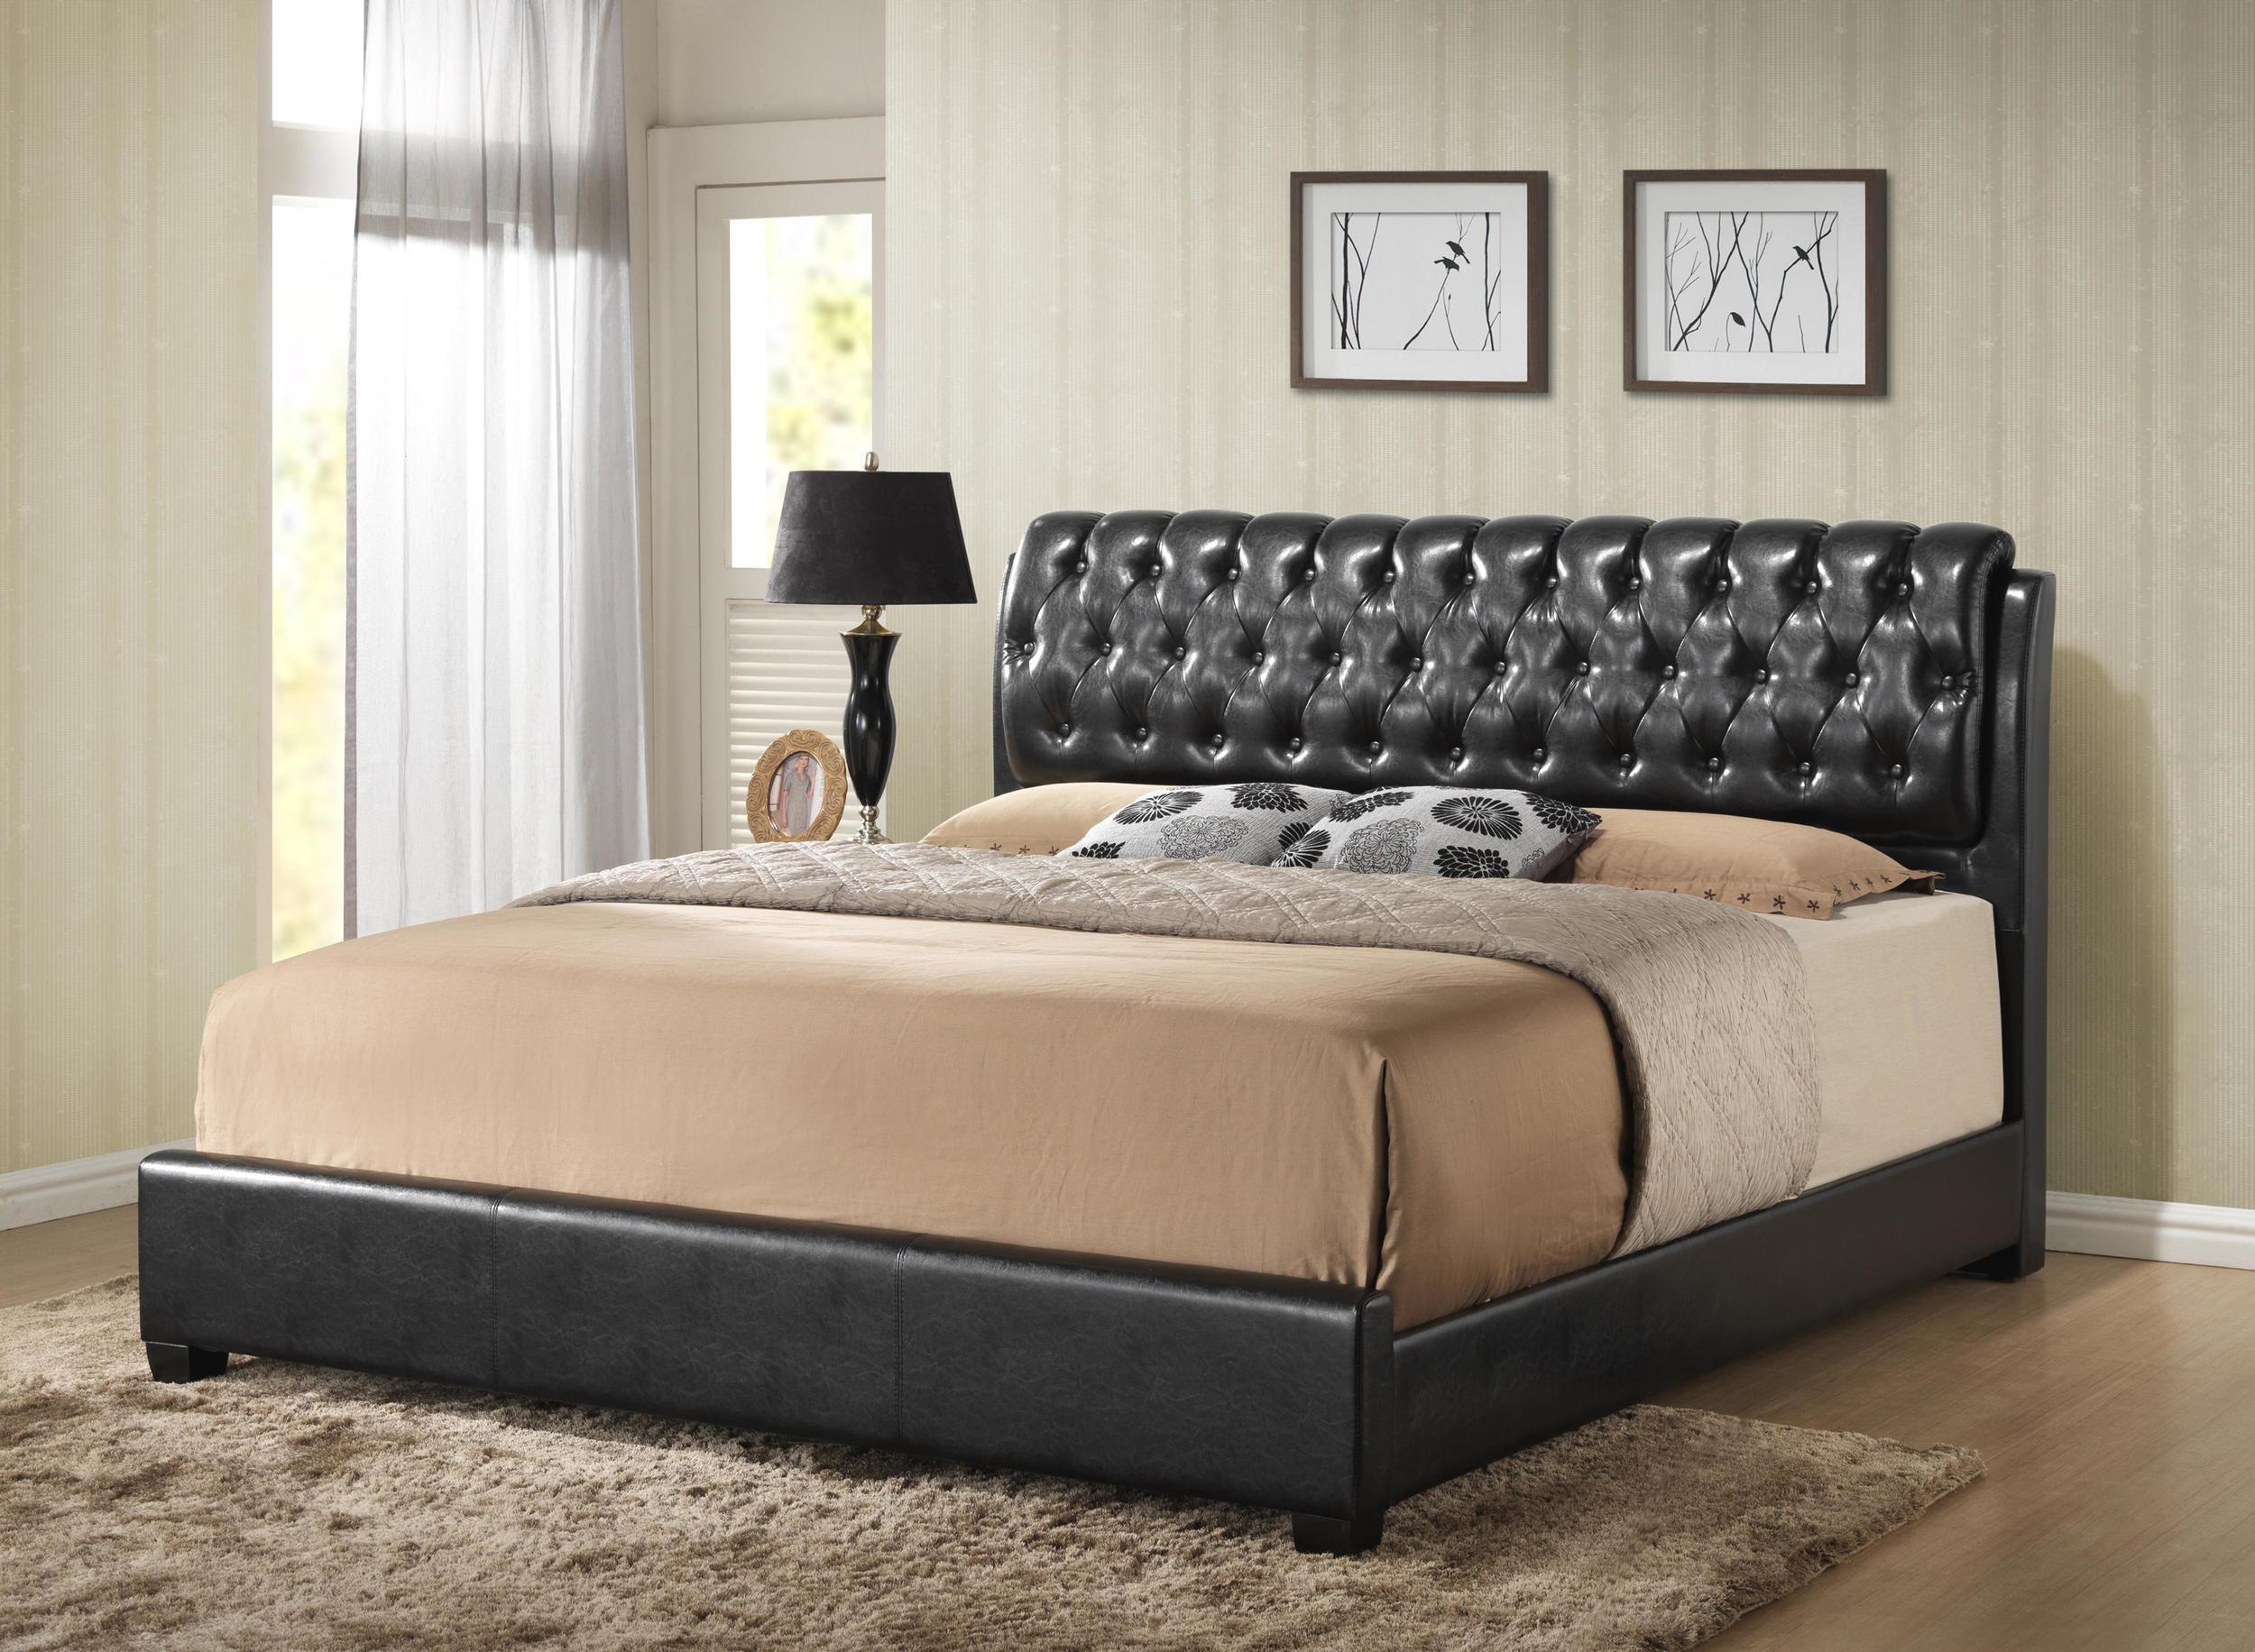 

    
MYCO Furniture 2955Q-BK Barnes Black Eco Leather Queen Bedroom Set 6Pcs
